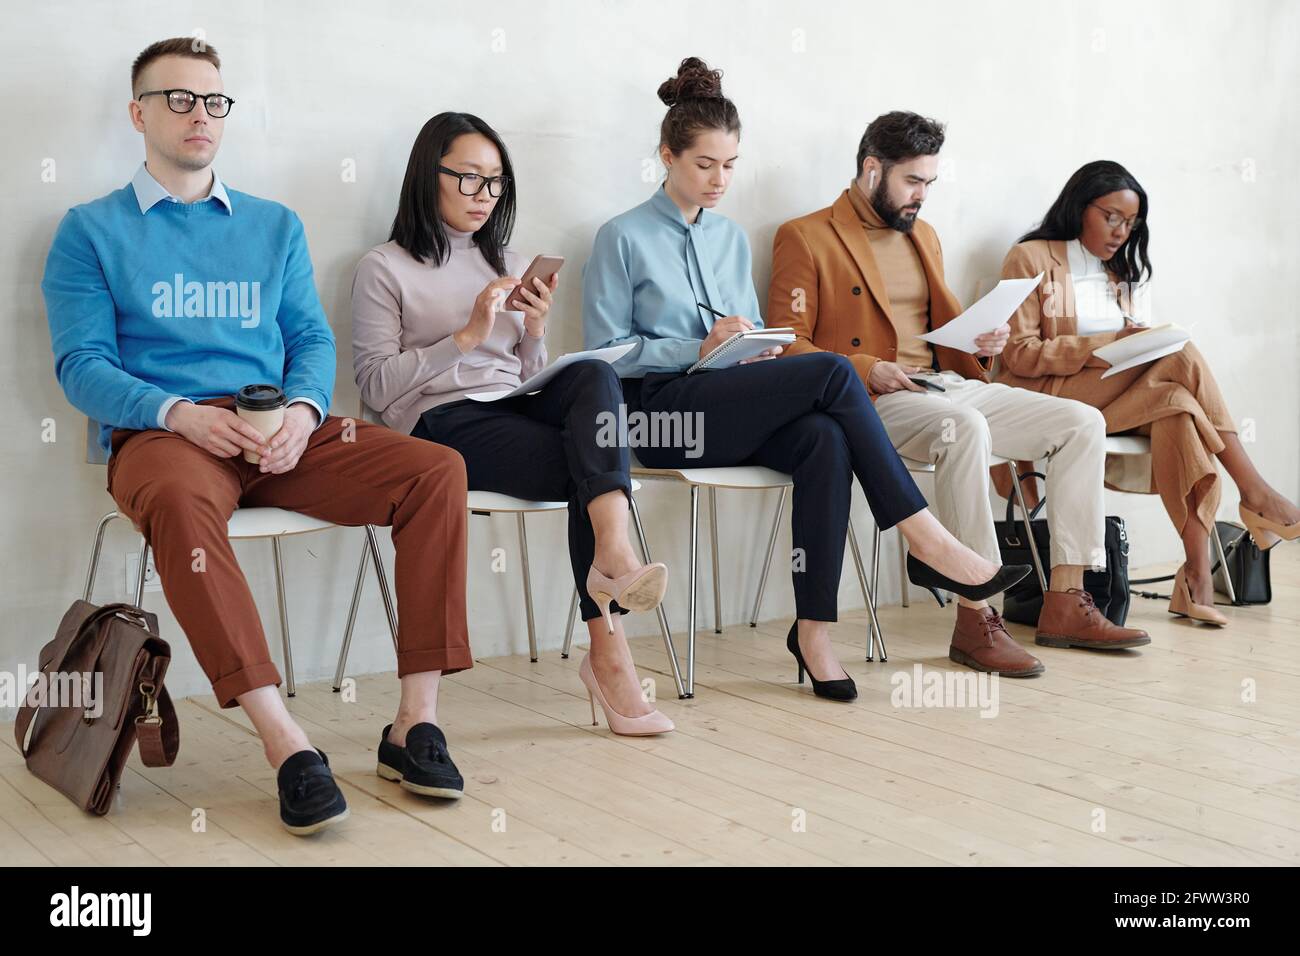 Groupe de jeunes candidats sérieux à un emploi multiethnique dans une ambiance décontractée et intelligente tenues assises sur des chaises en ligne et se préparant à l'entrevue dans un couloir Banque D'Images